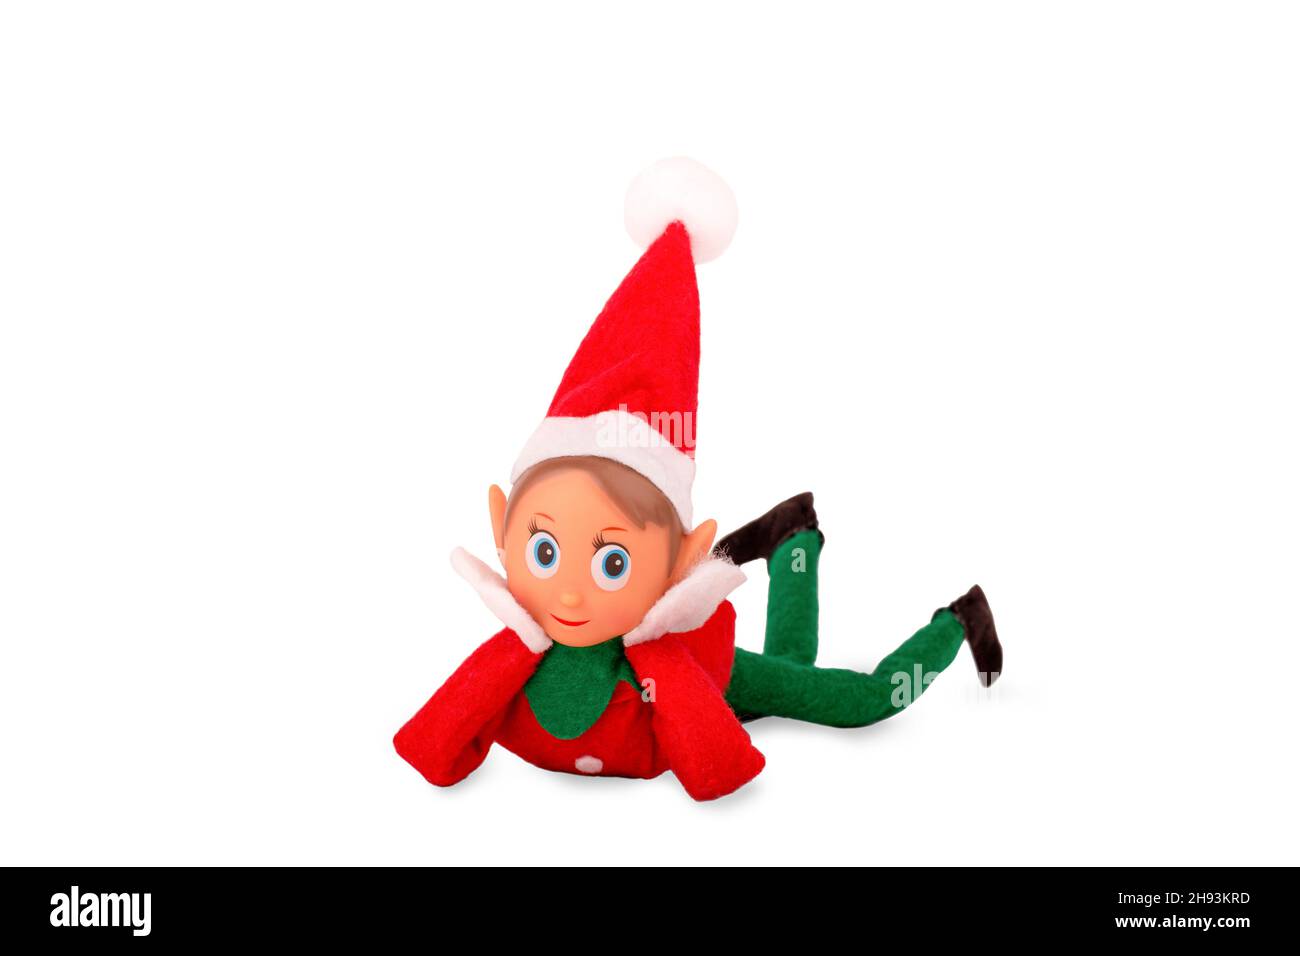 Jouet Elf de Noël isolé sur fond blanc avec espace de copie.Esprit de Noël, tradition de Noël. Banque D'Images